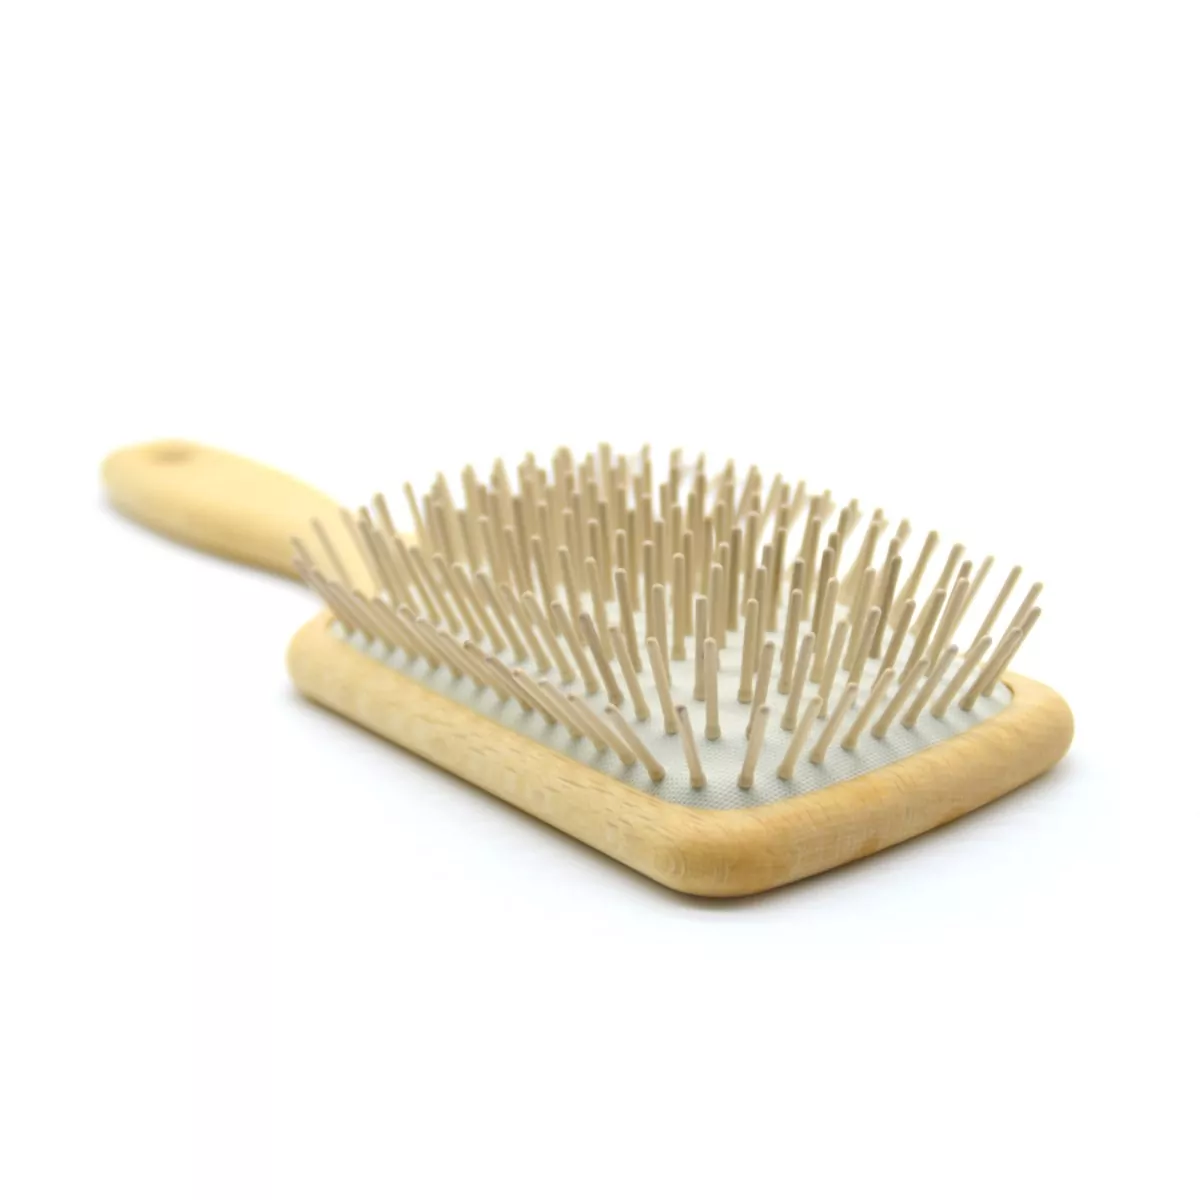 Cepillos de madera para el cabello: ventajas y beneficios. Blog de